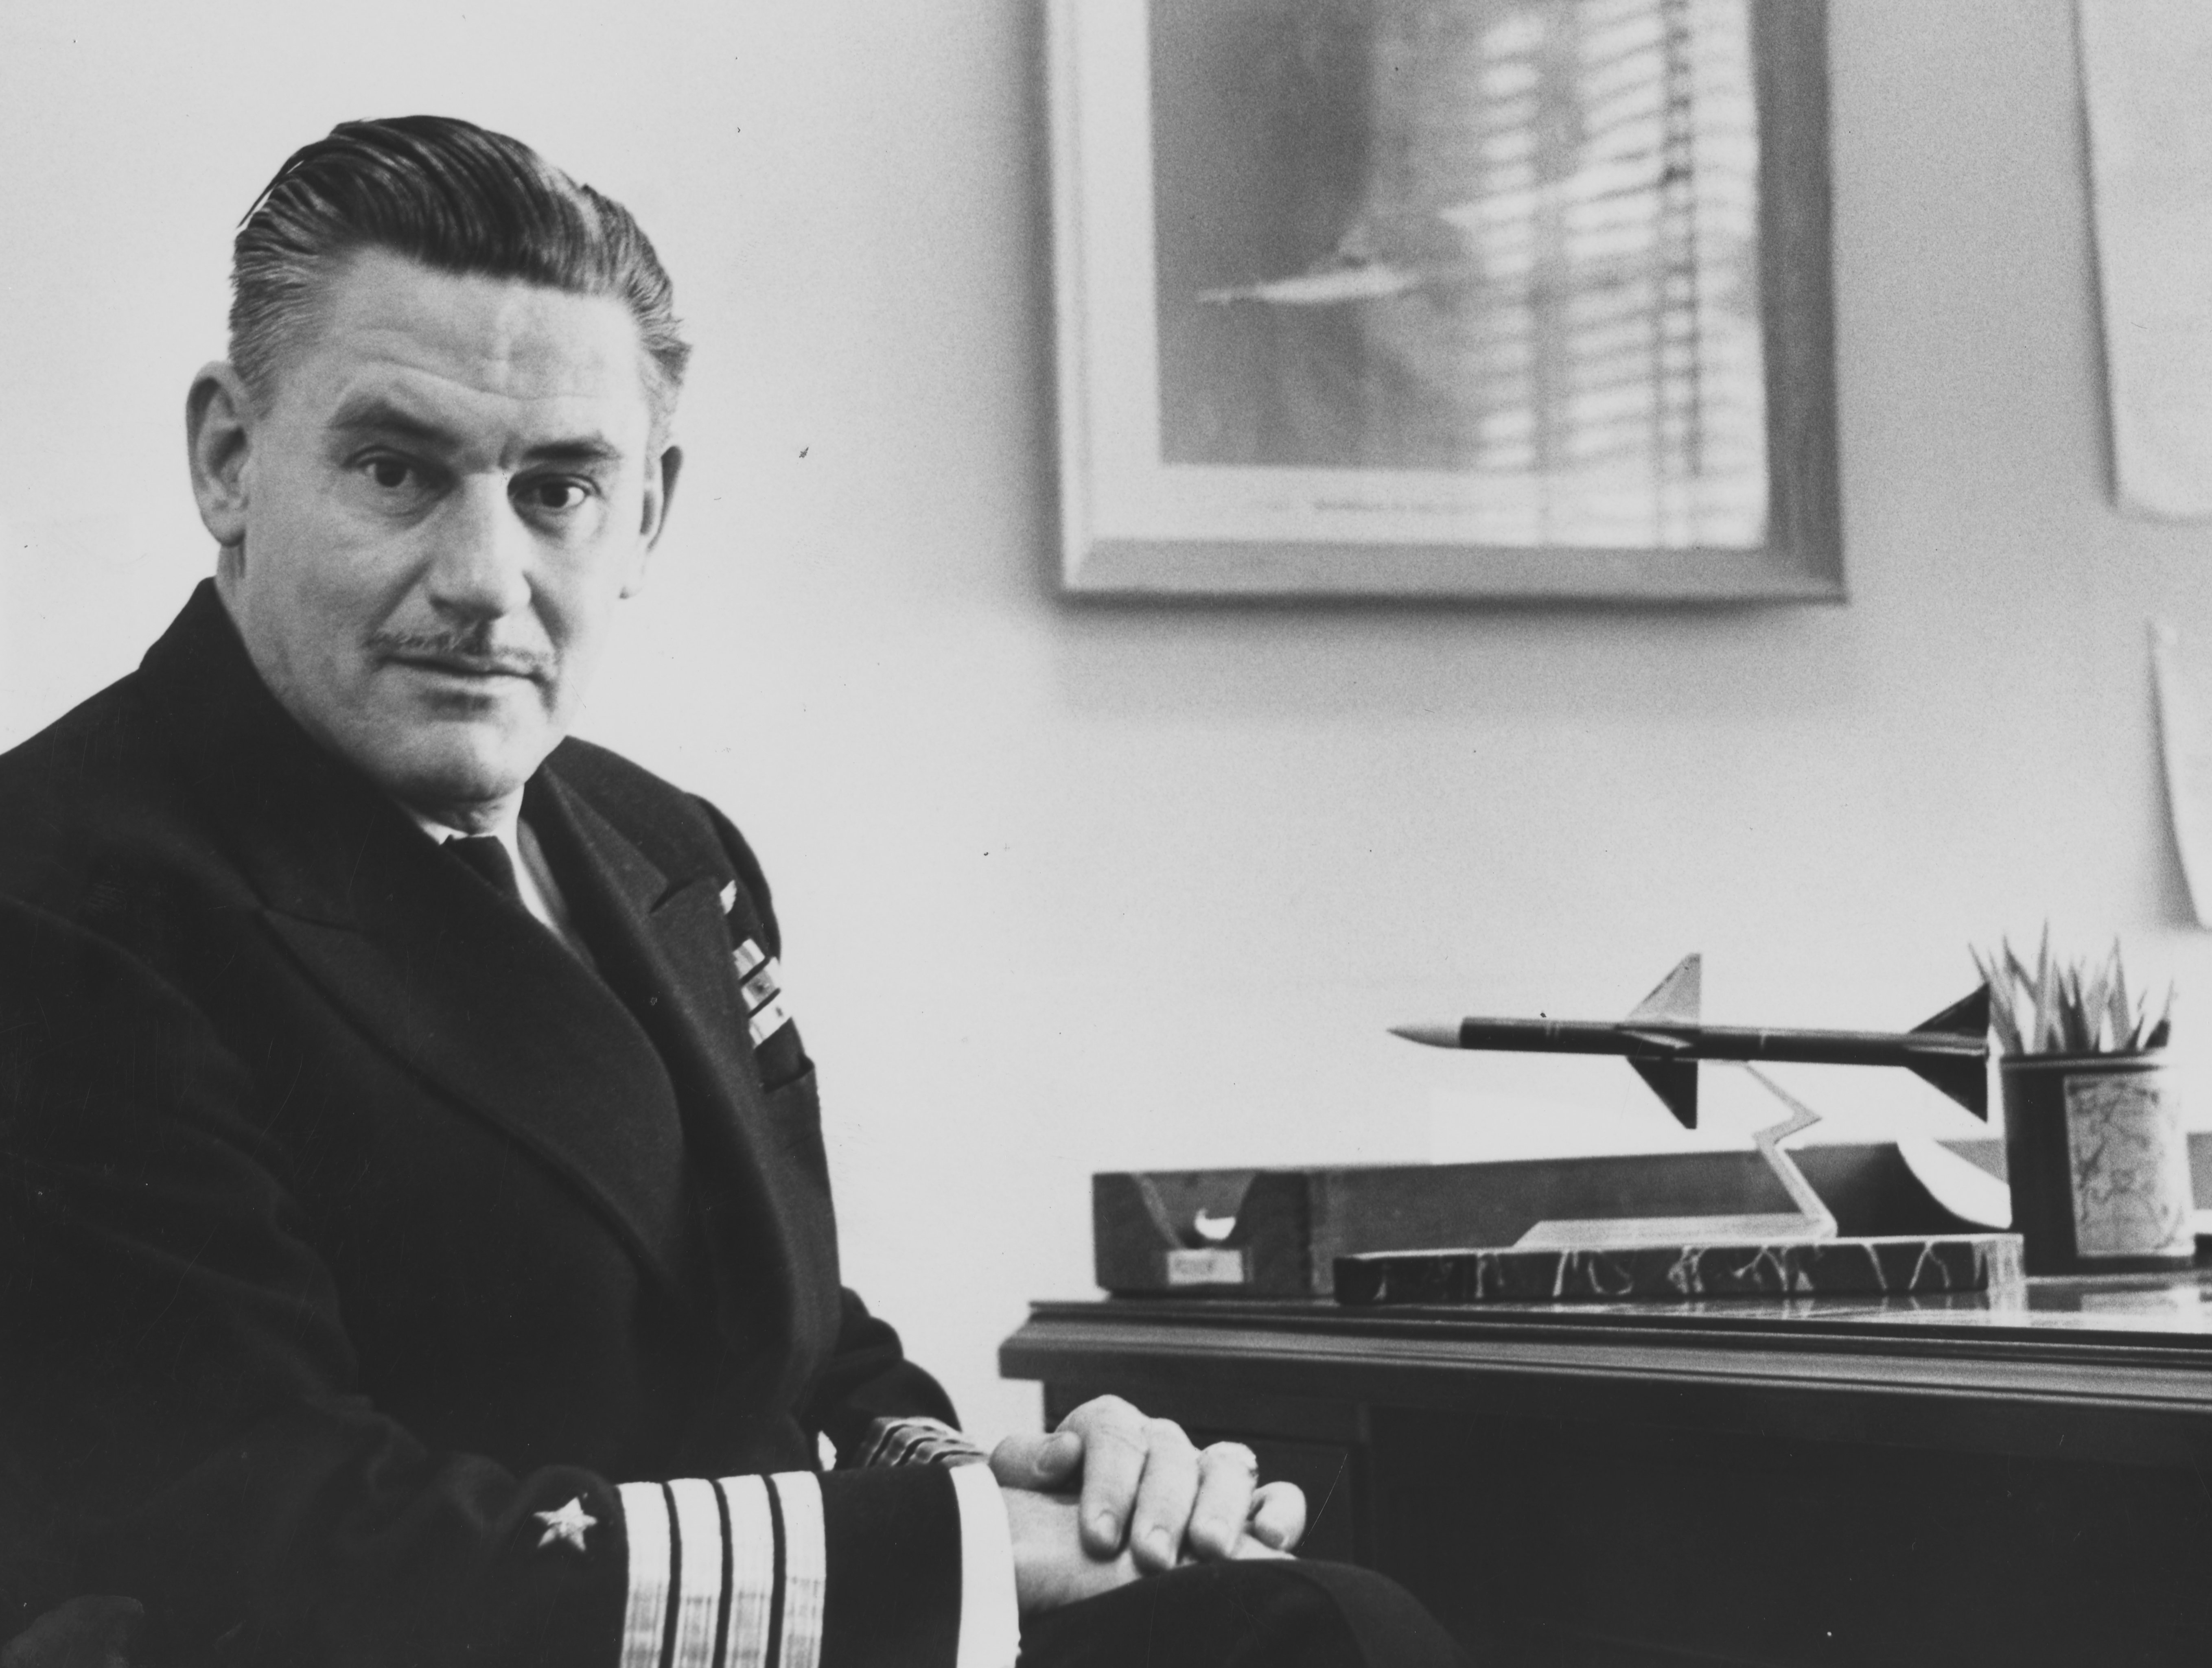 Captain Carl H. Amme, Jr., USN.